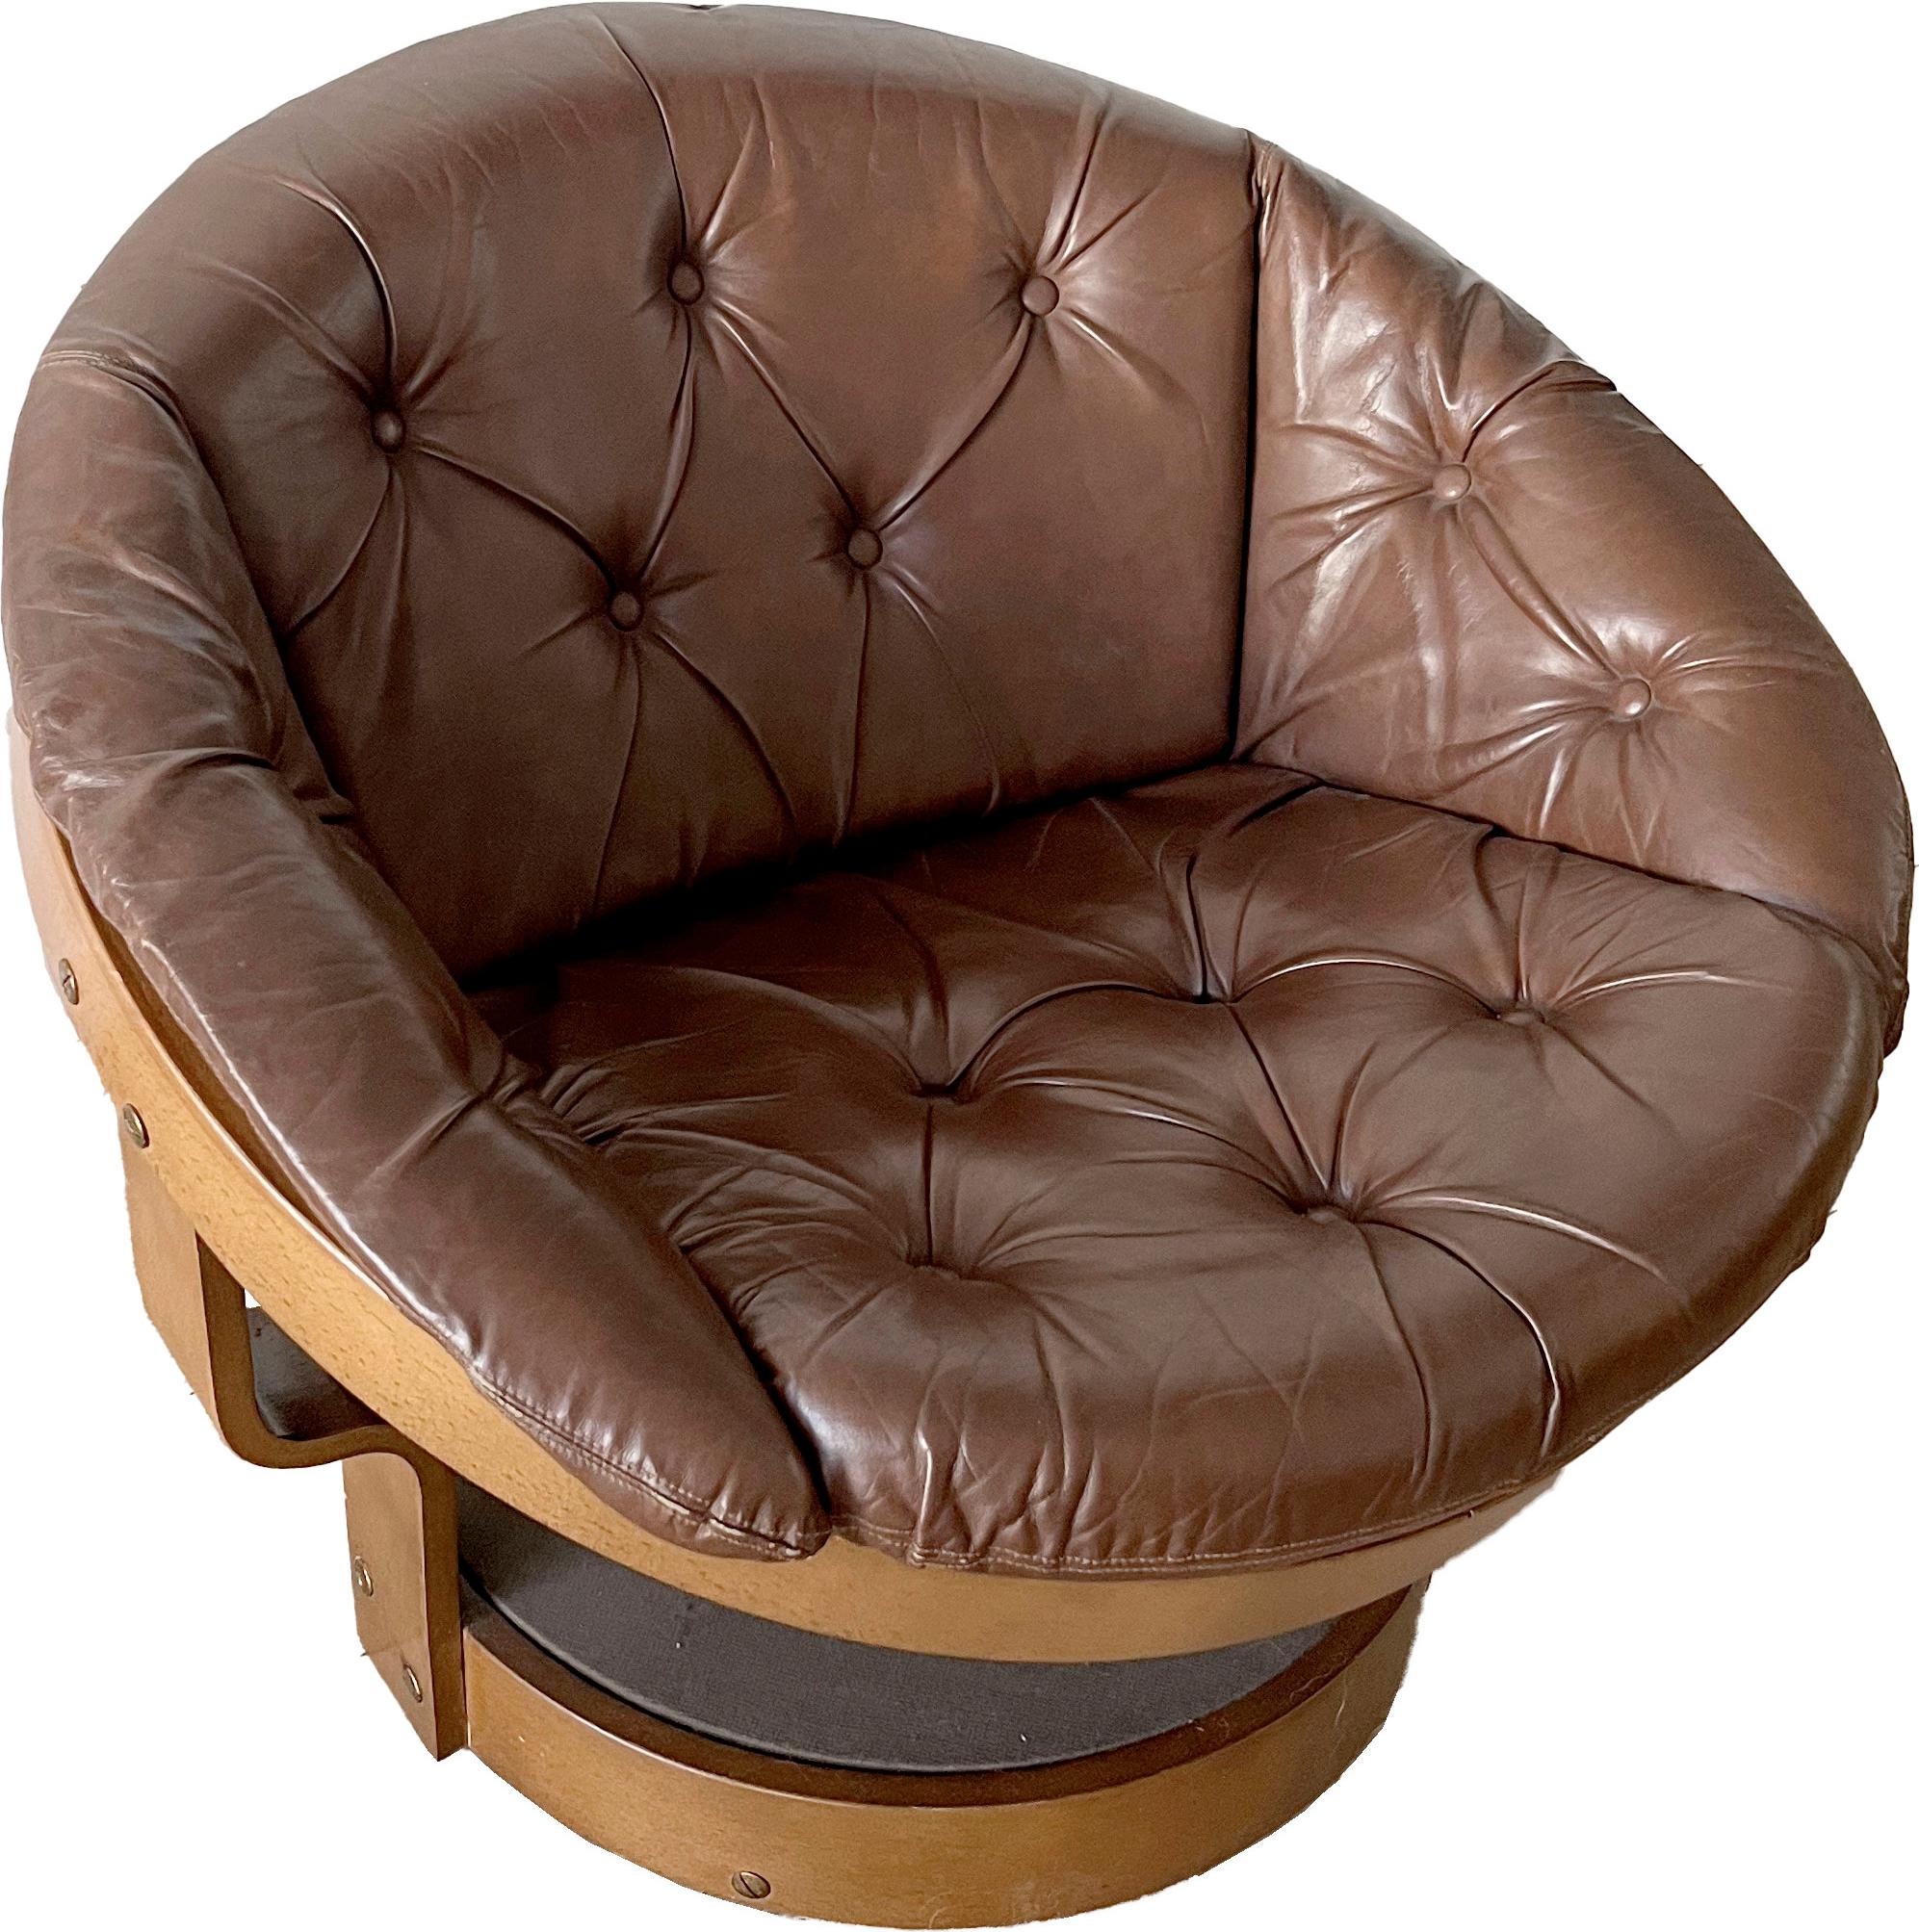 Le fauteuil pivotant Convair a été conçu dans les années 1970 par le designer norvégien Oddmund Vad. Le design de ce fauteuil se distingue par sa forme sphérique, qui lui confère un aspect futuriste et moderne.

Le fauteuil Convair est doté d'une